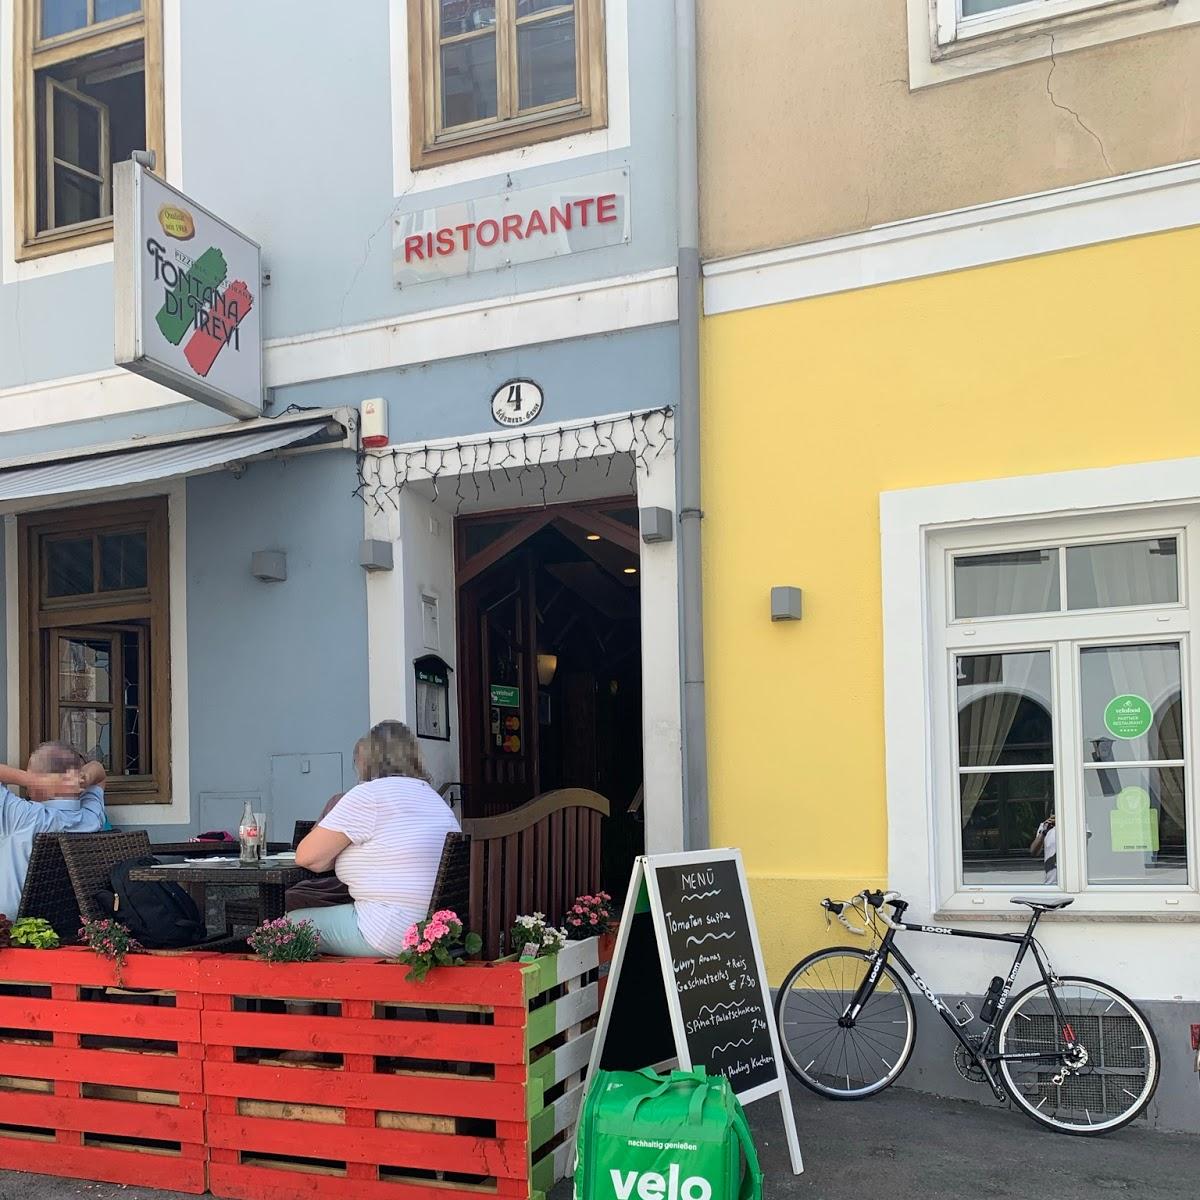 Restaurant "Fontana di trevi" in Graz